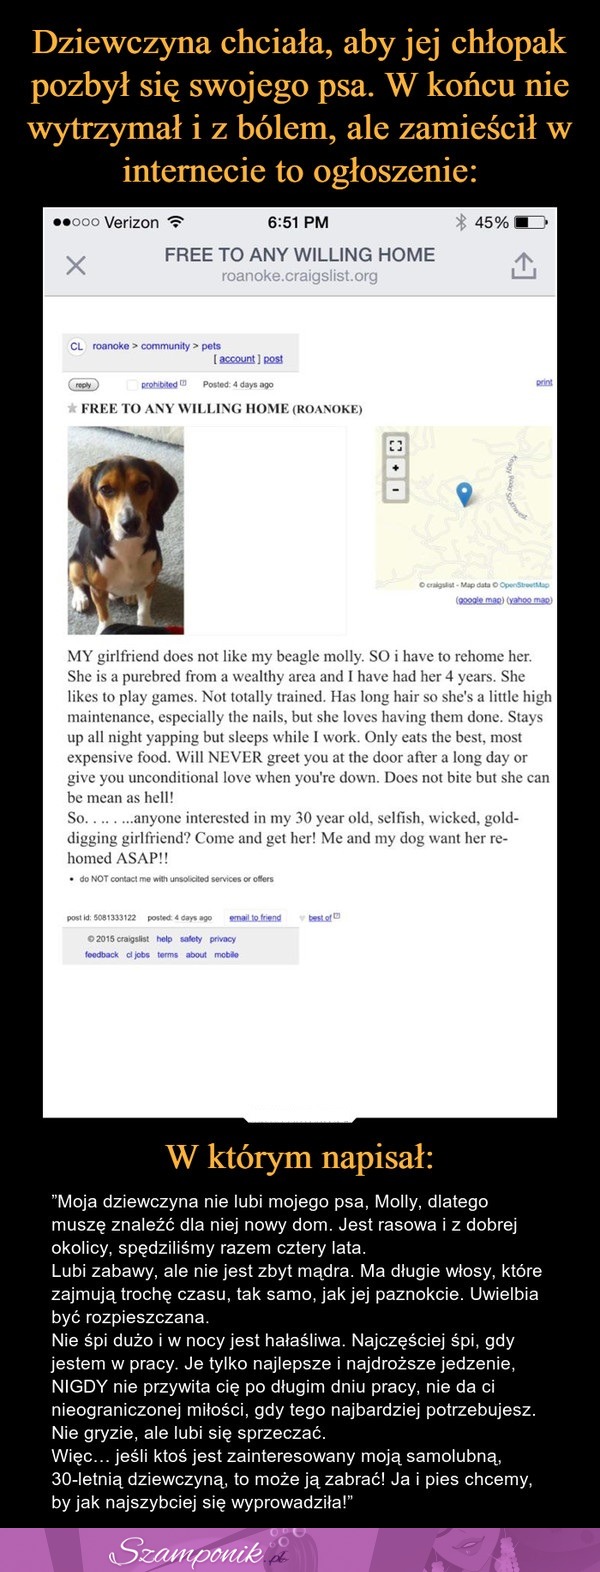 Dziewczyna chciała, aby jej chłopak pozbył się swojego psa. Po tym zamieścił w internecie takie ogłoszenie...